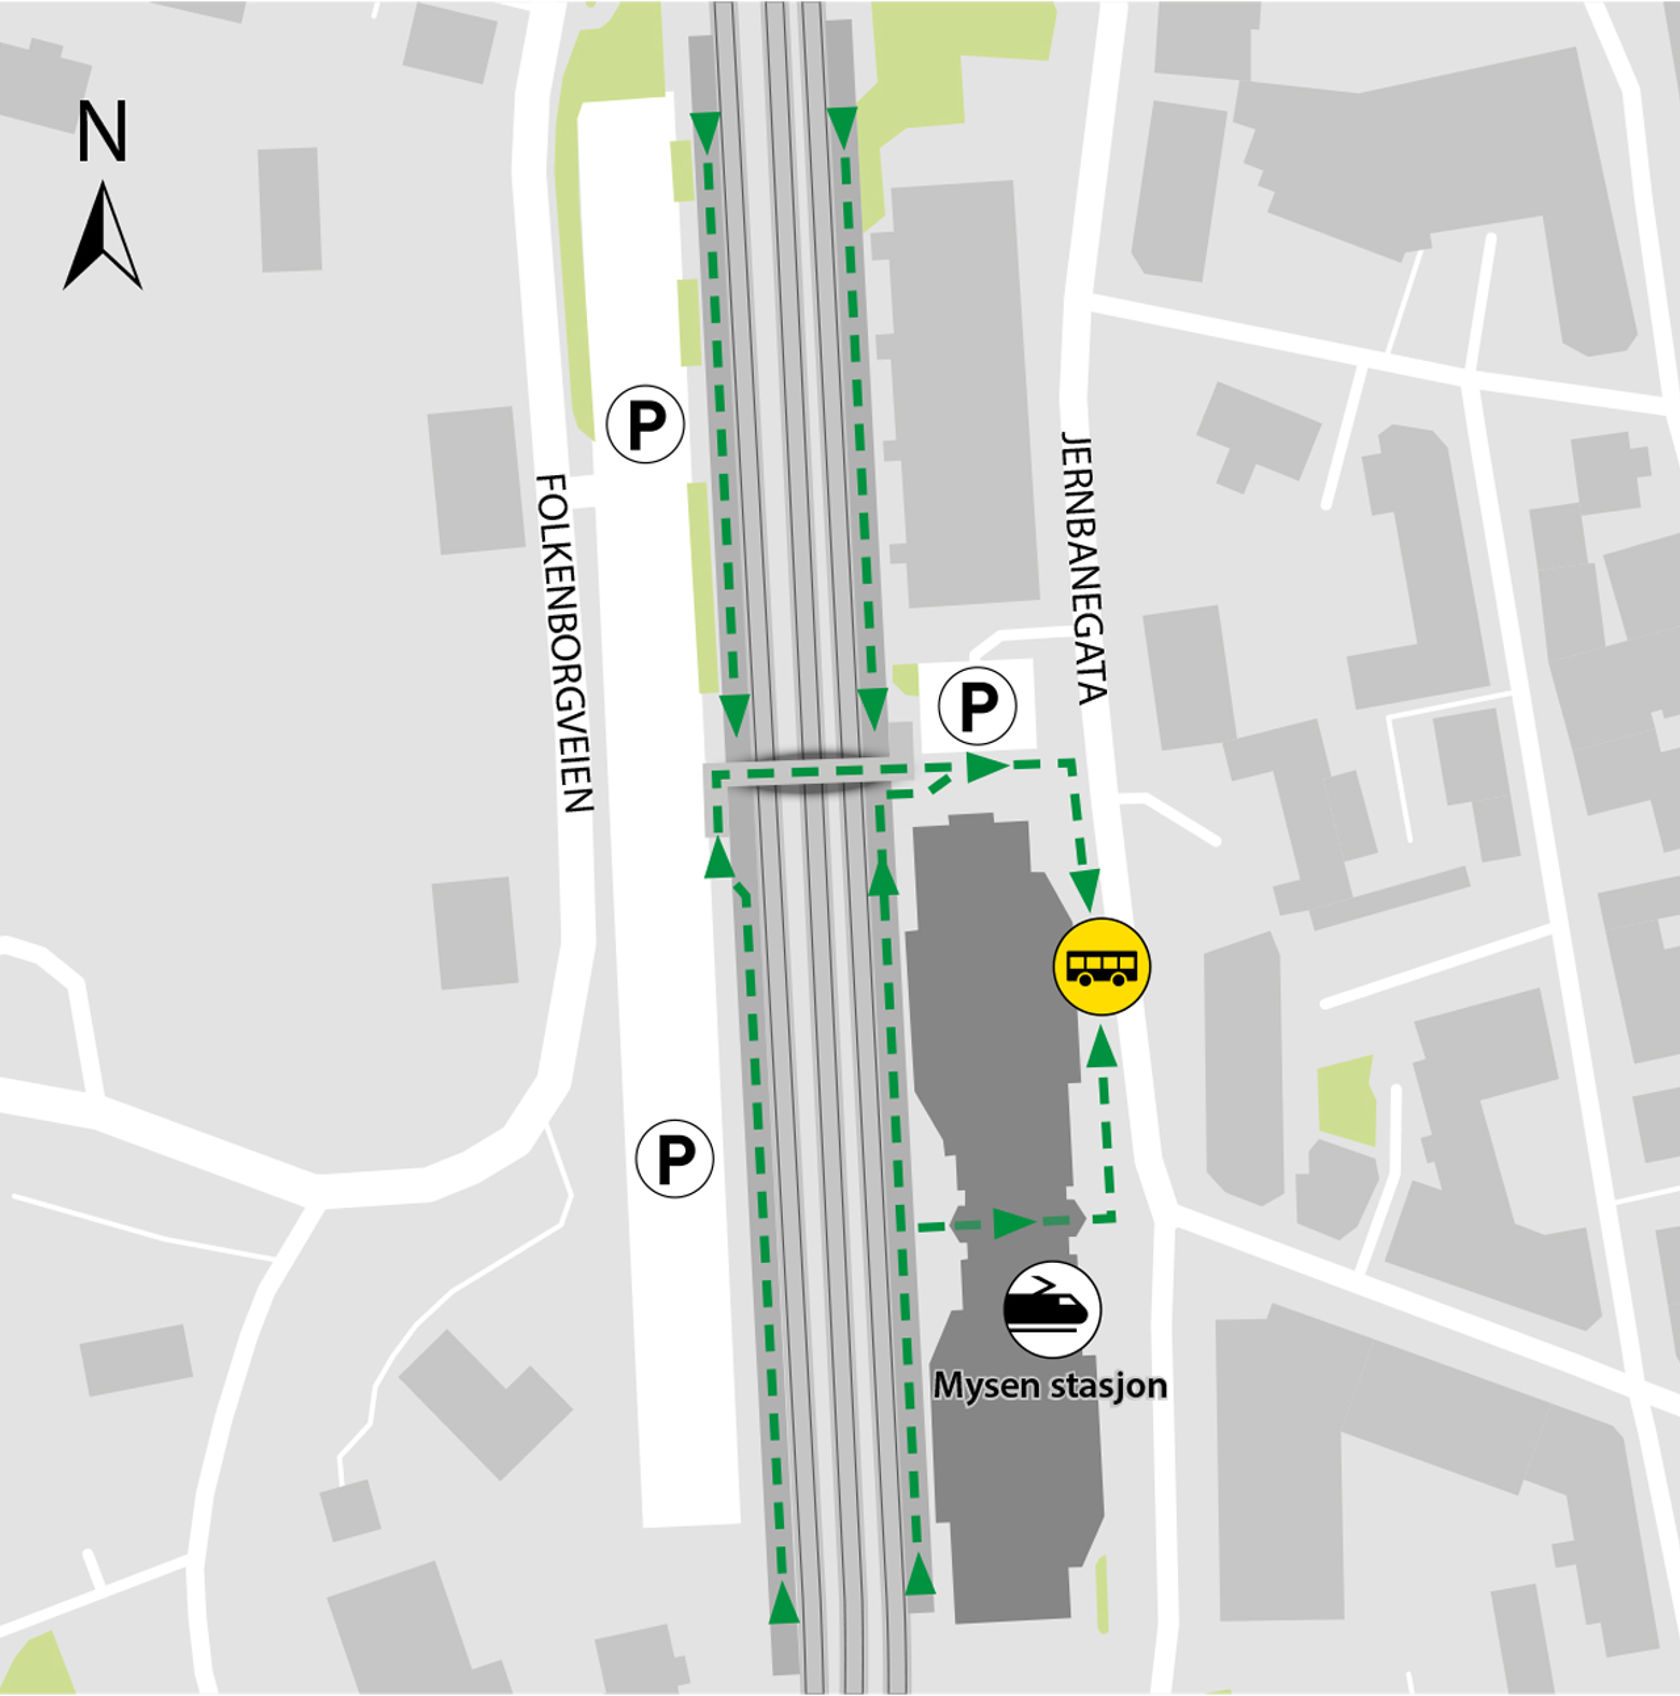 Kartet viser at bussene kjører fra bussholdeplassen Mysen stasjon.